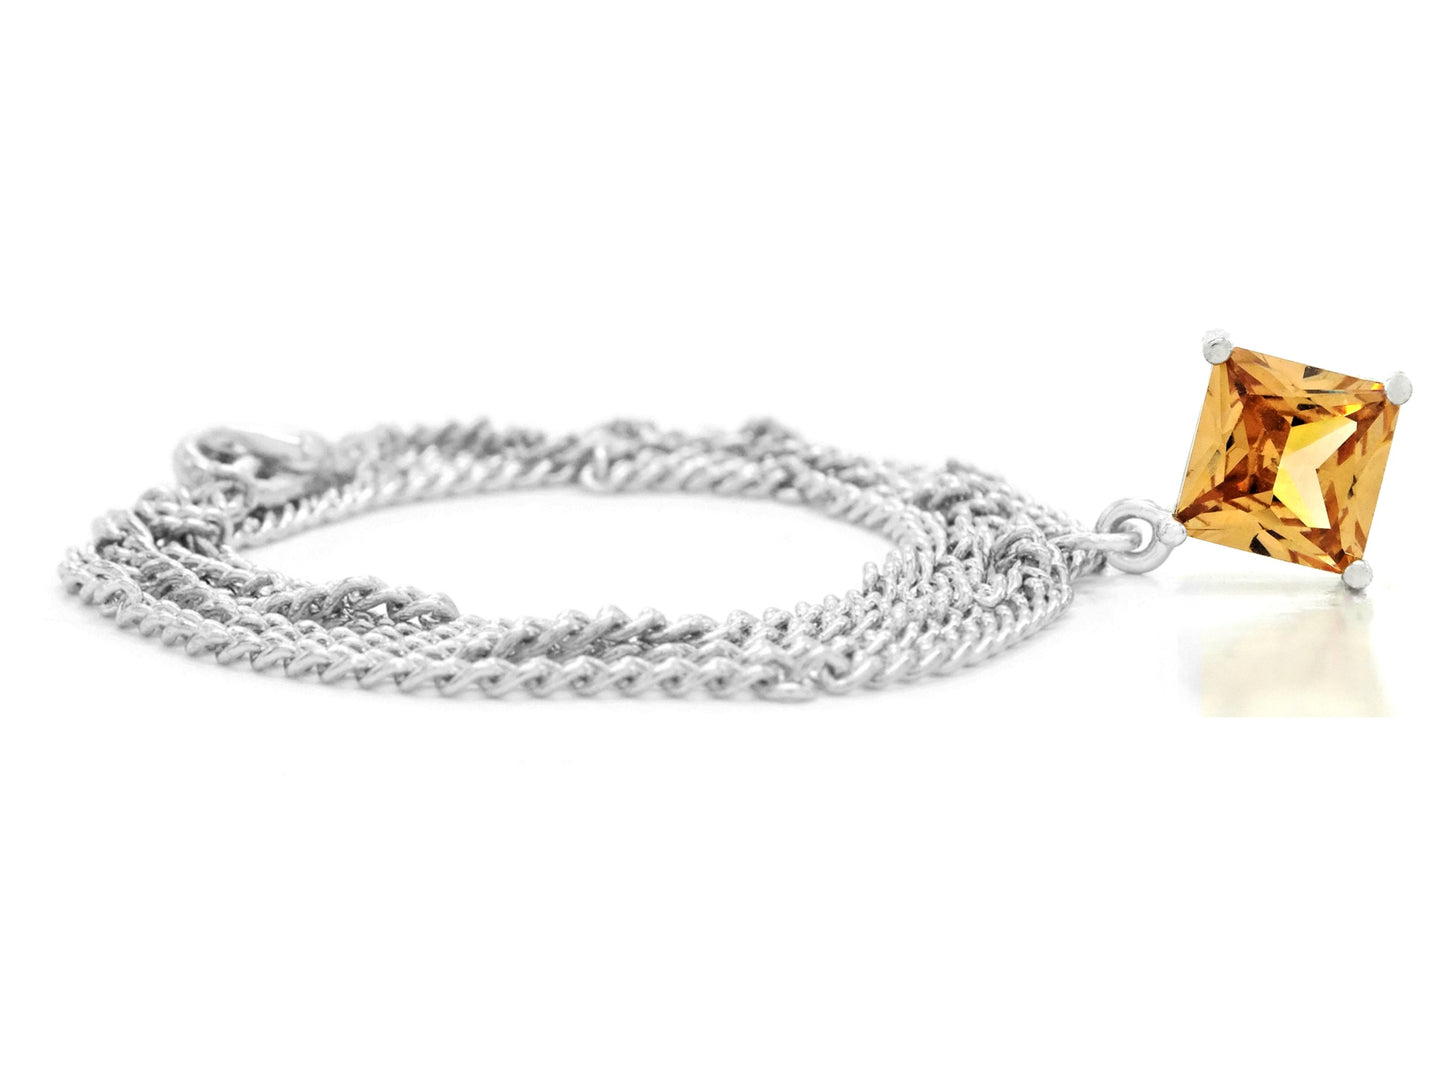 Orange gem princess white gold necklace FRONT